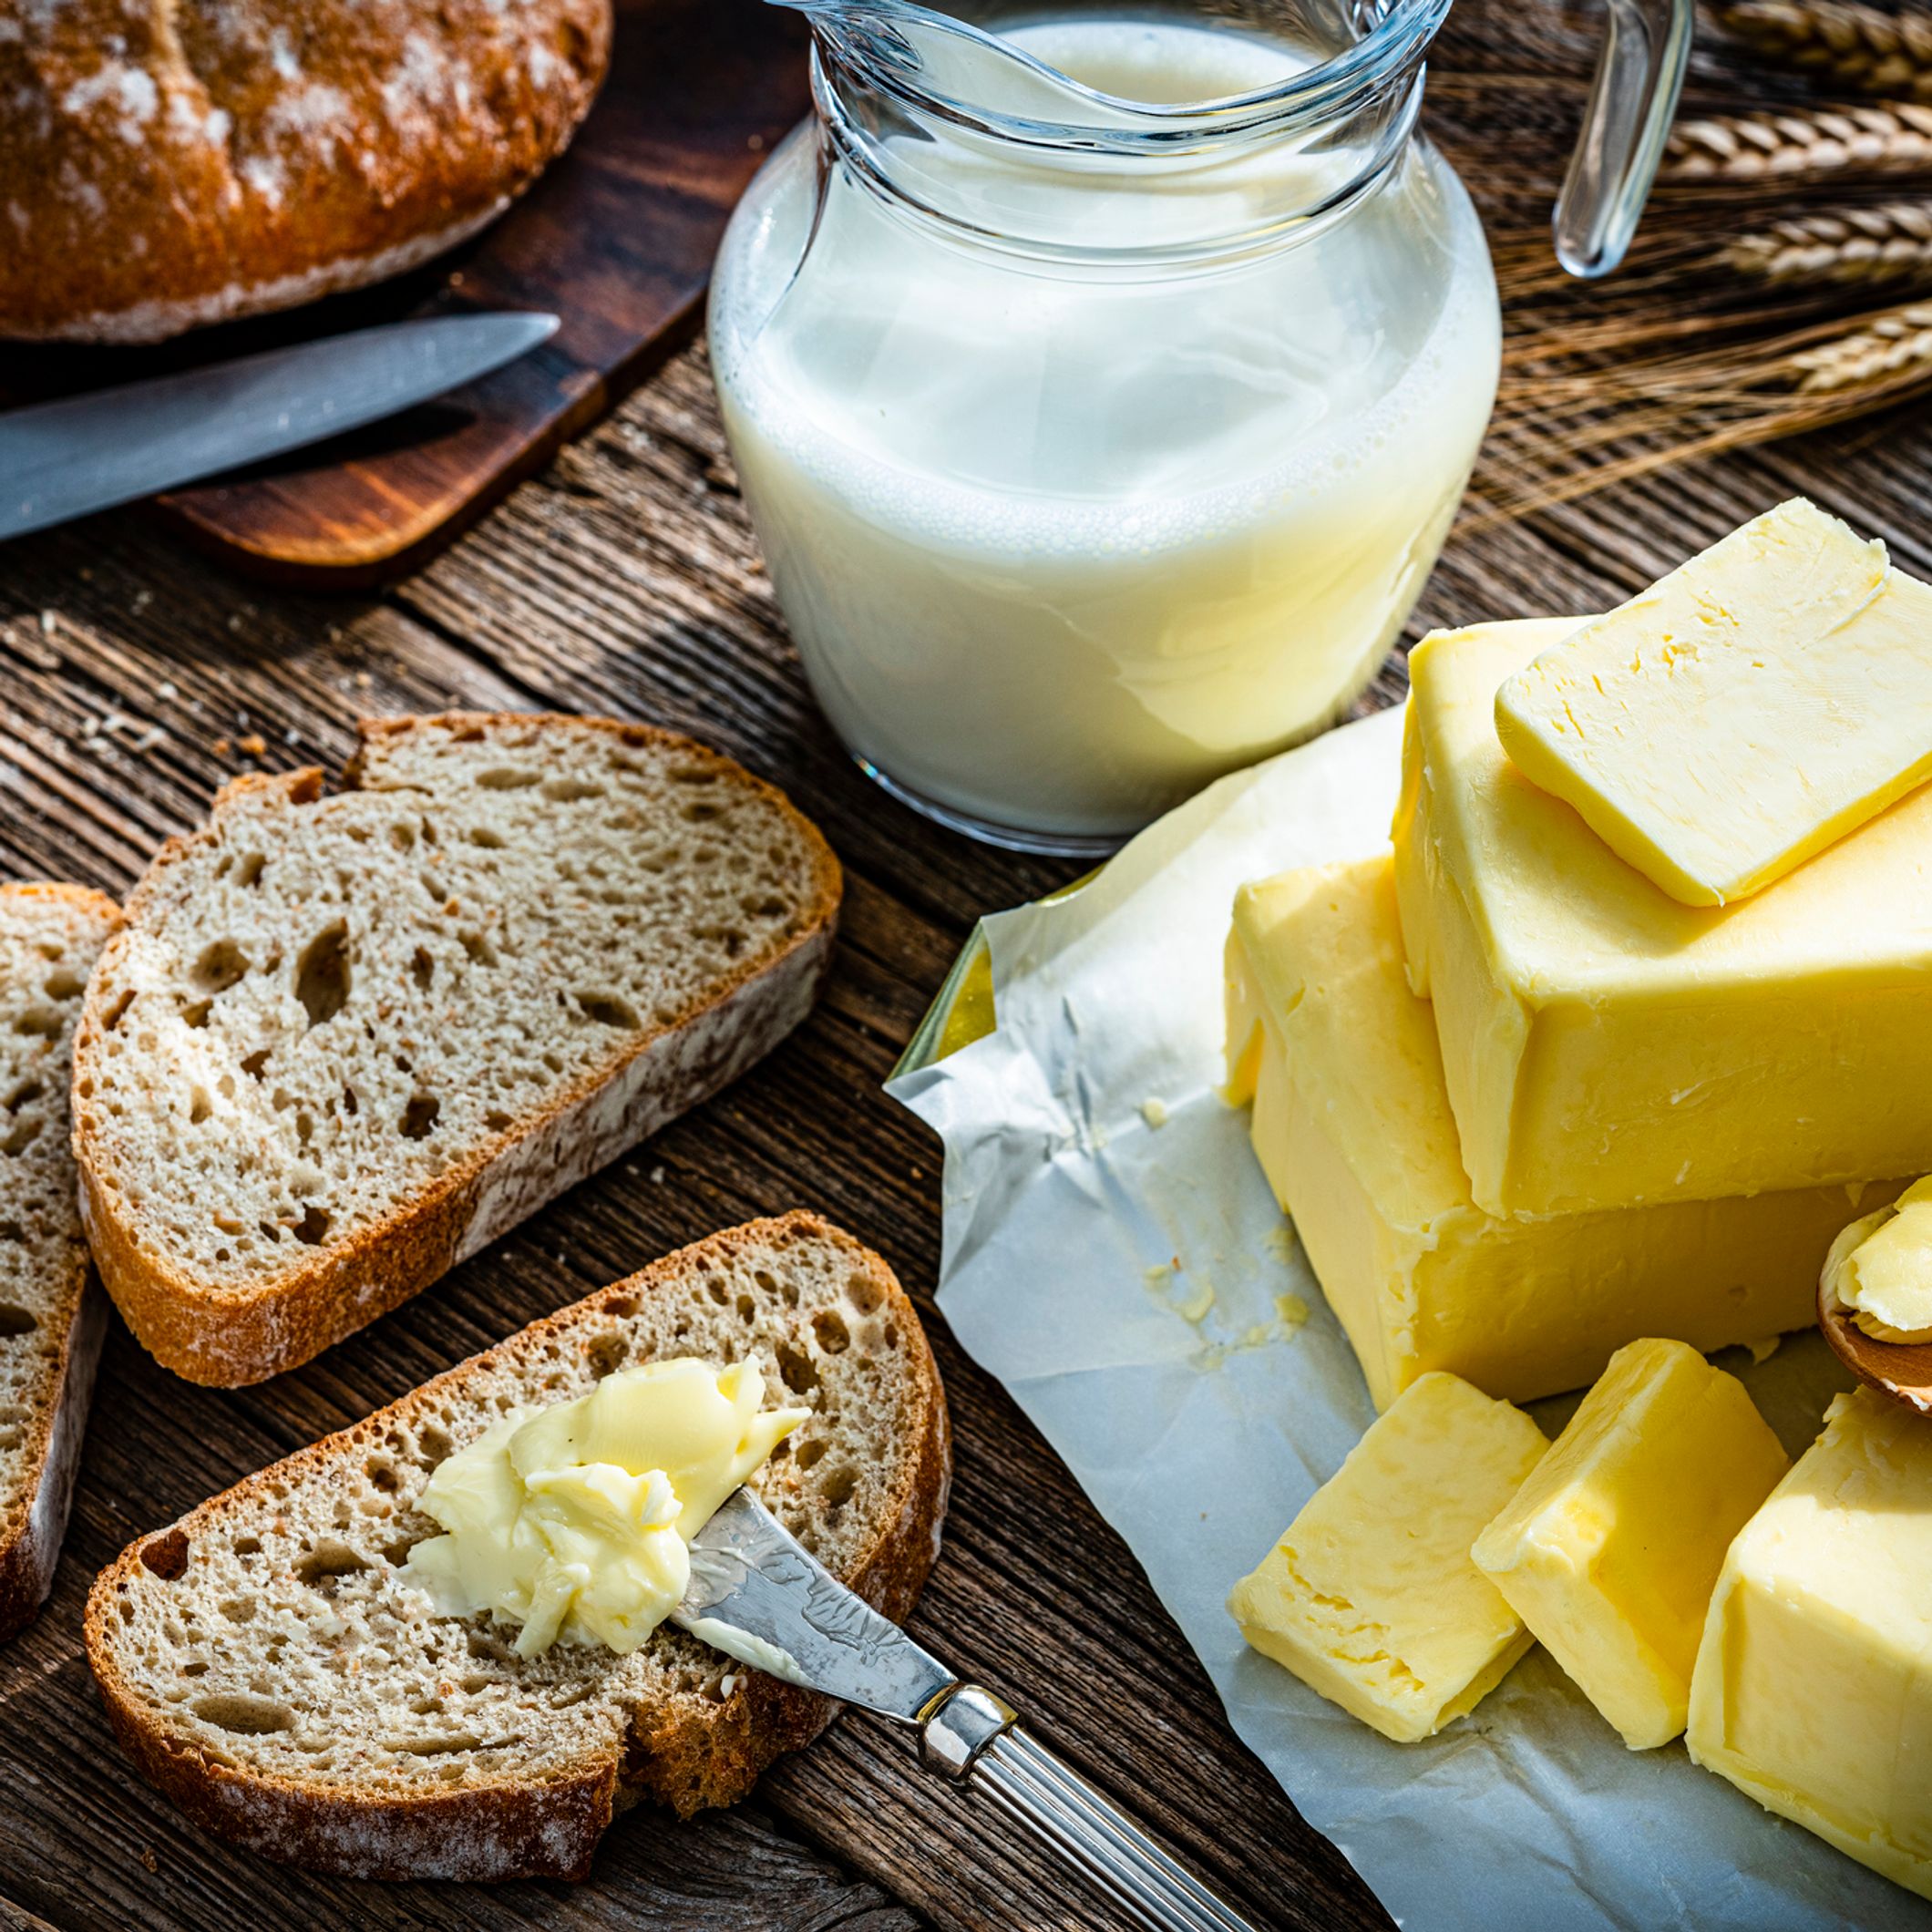 Le beurre mérite-t-il vraiment sa mauvaise réputation ?